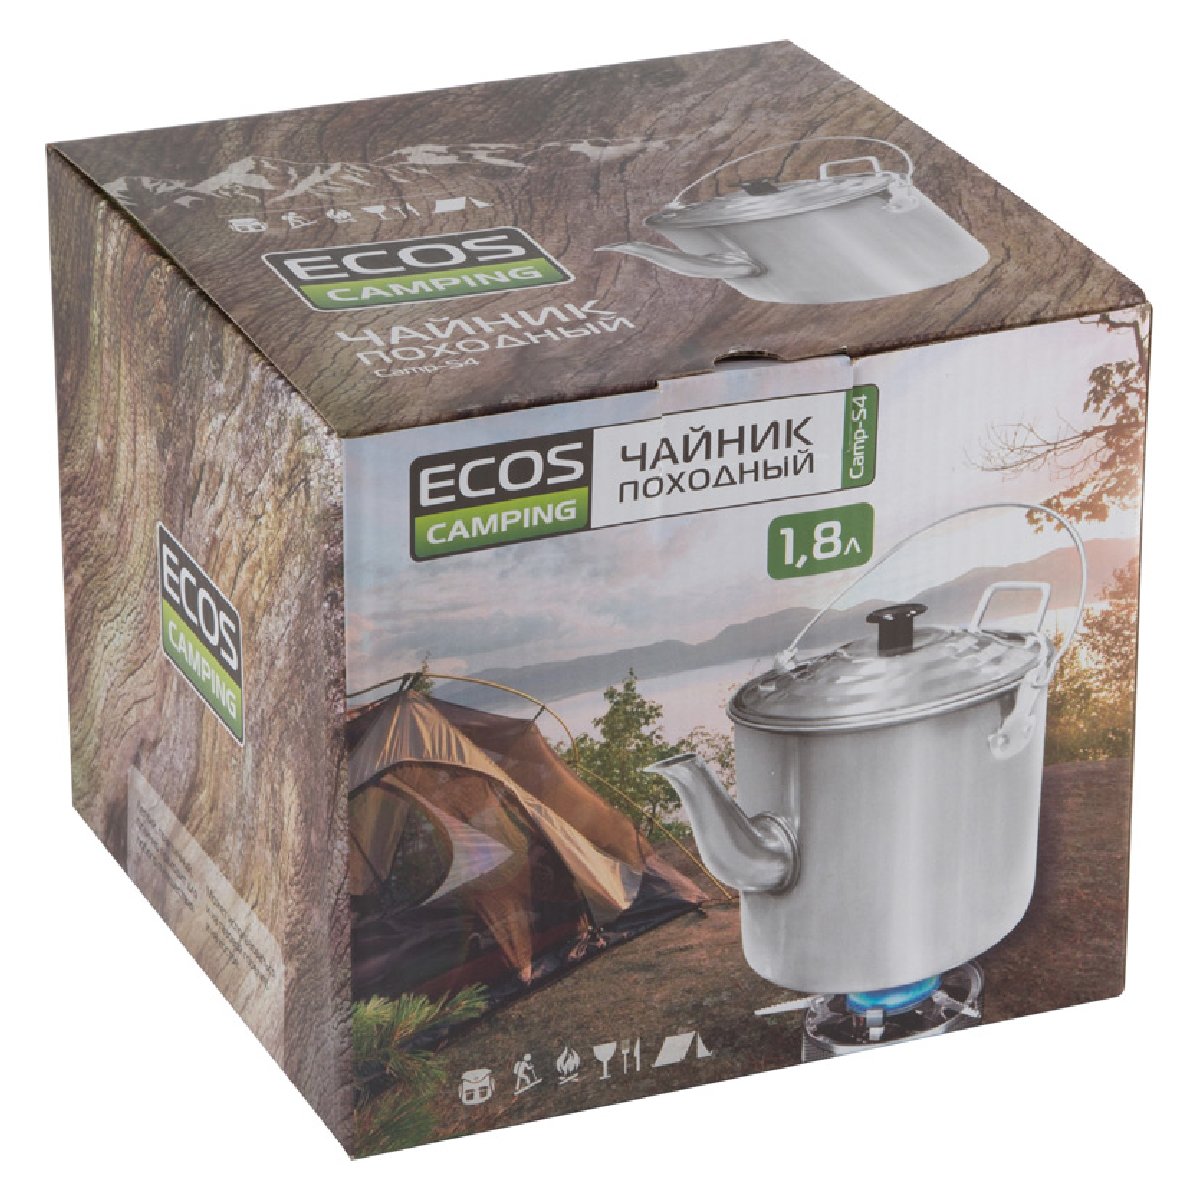 Чайник походный Ecos Camp-S4 1.8л алюминий (991010)